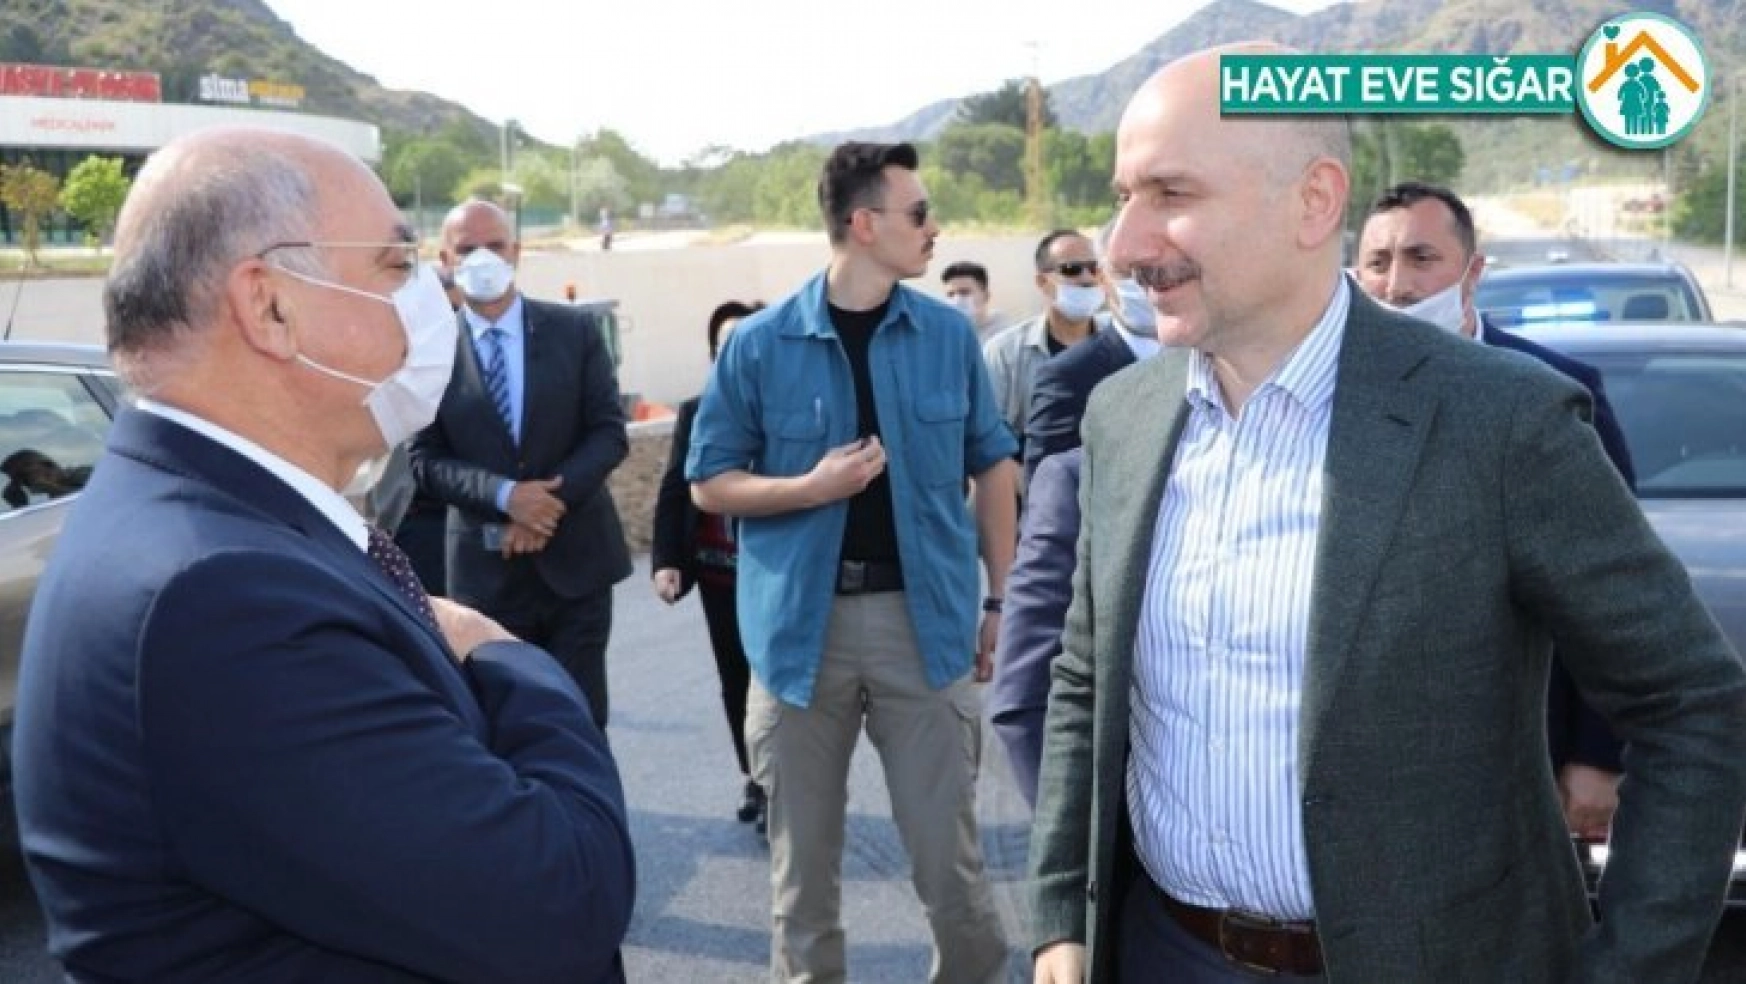 Bakan Karaismailoğlu, Amasya Çevre Yolu şantiyesinde incelemelerde bulundu